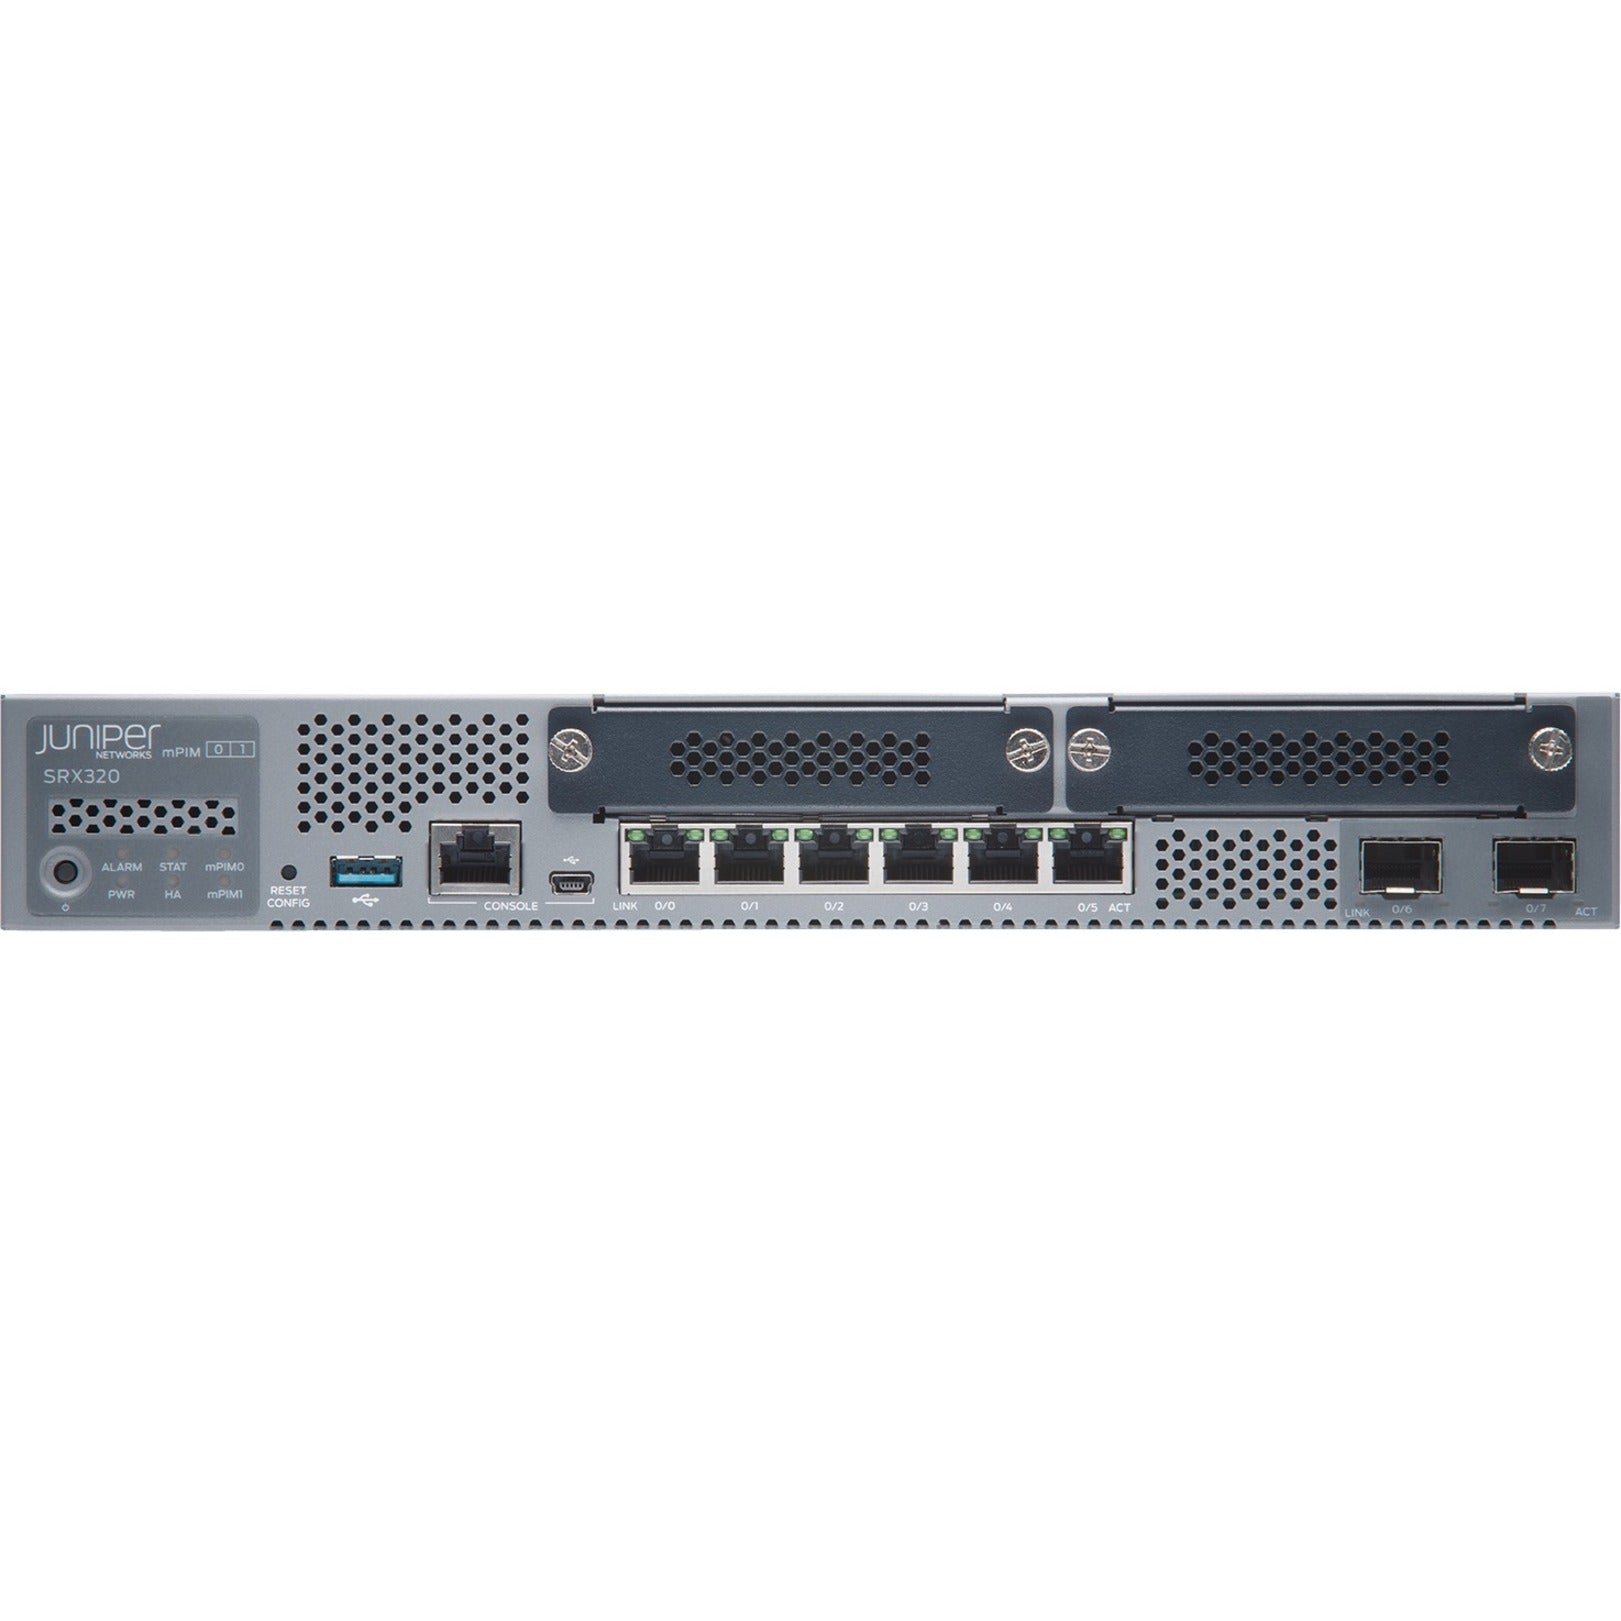 Juniper SRX320 Router (SRX320-POE)